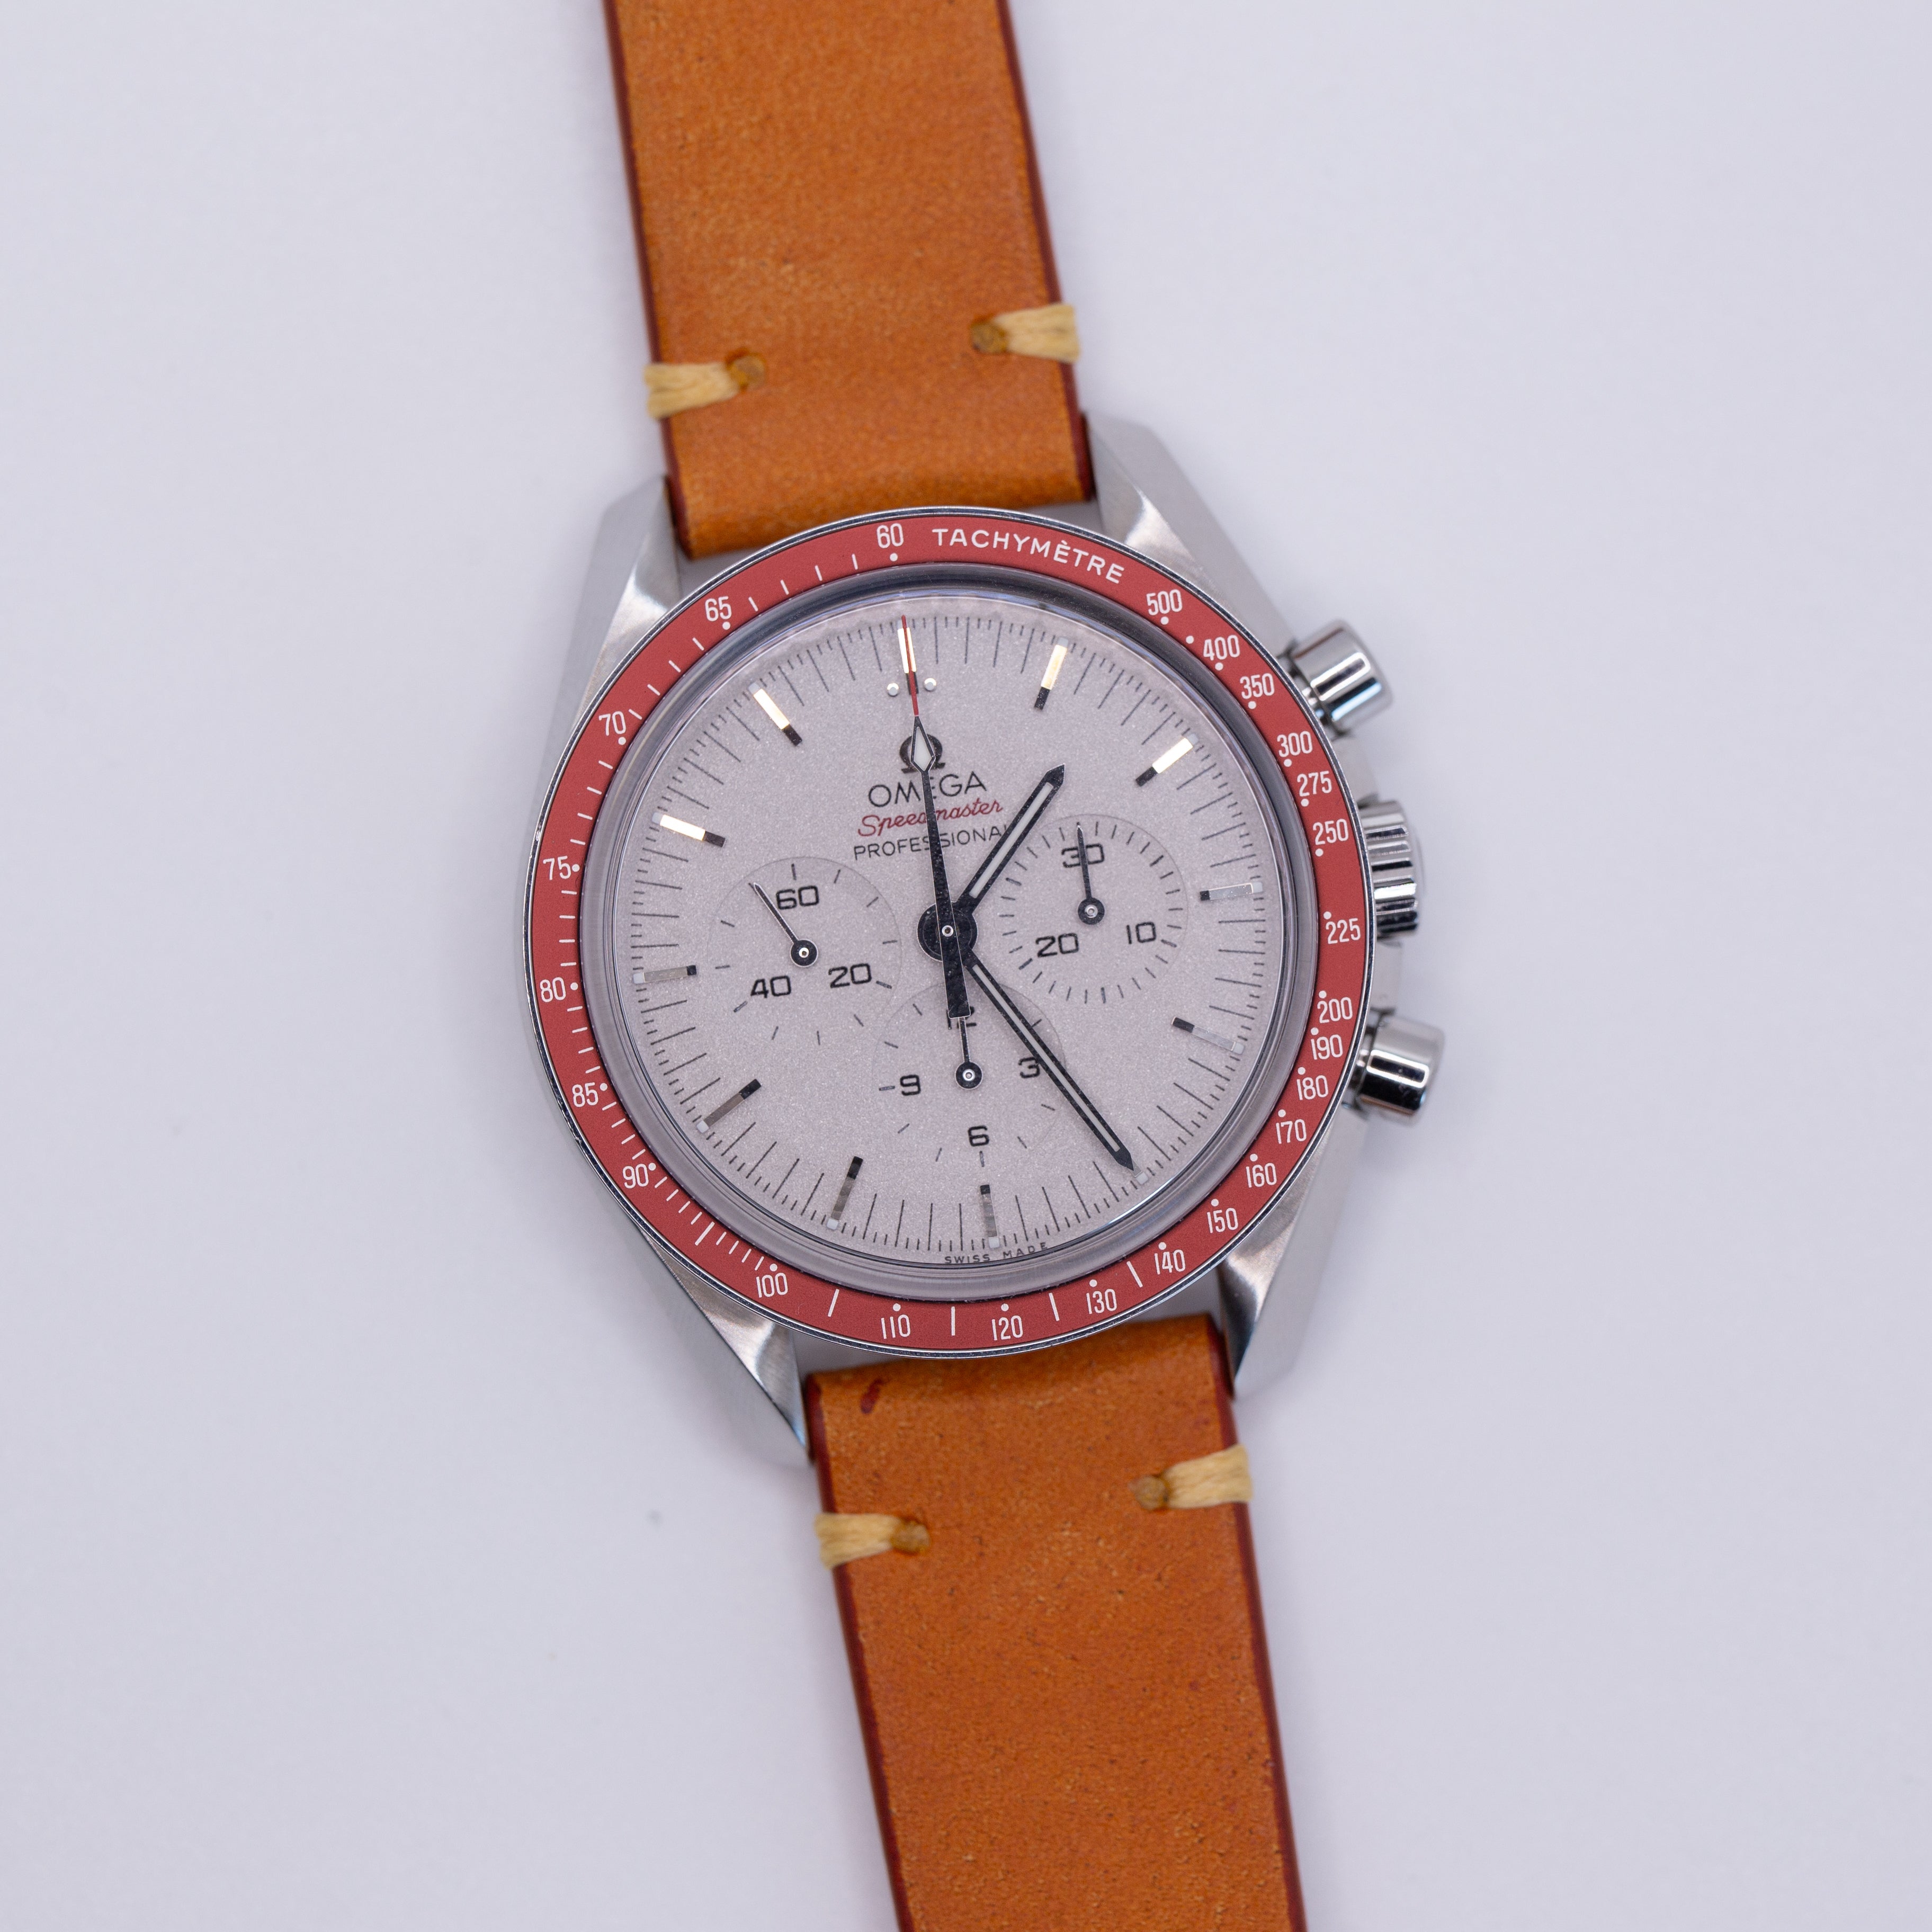 Speedmaster Leather Watch Strap Orange